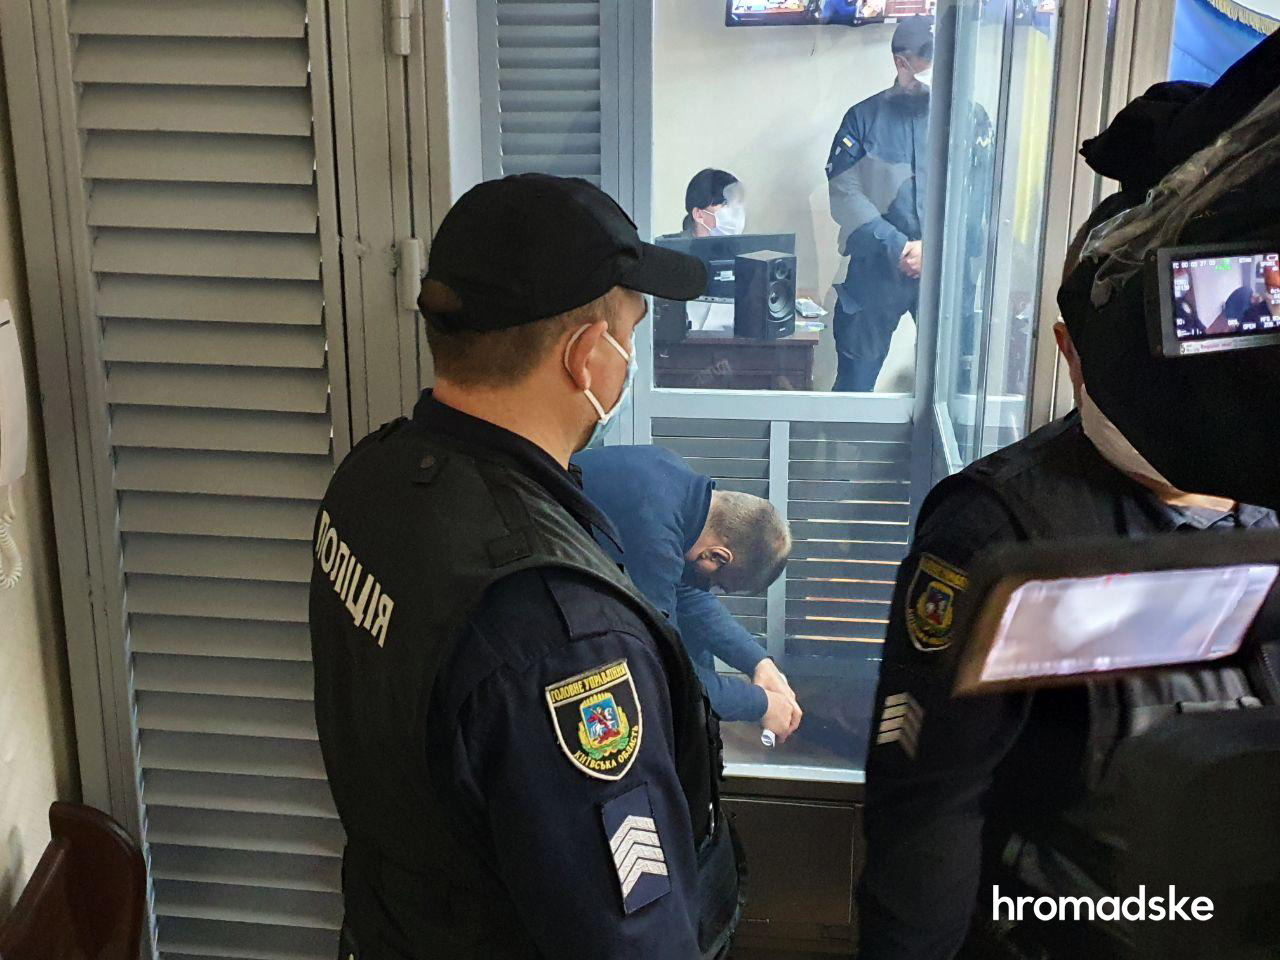 Подозреваемый в изнасиловании полицейский Сергей Сулима в суде (Фото: Богдан Кутепов/hromadske)